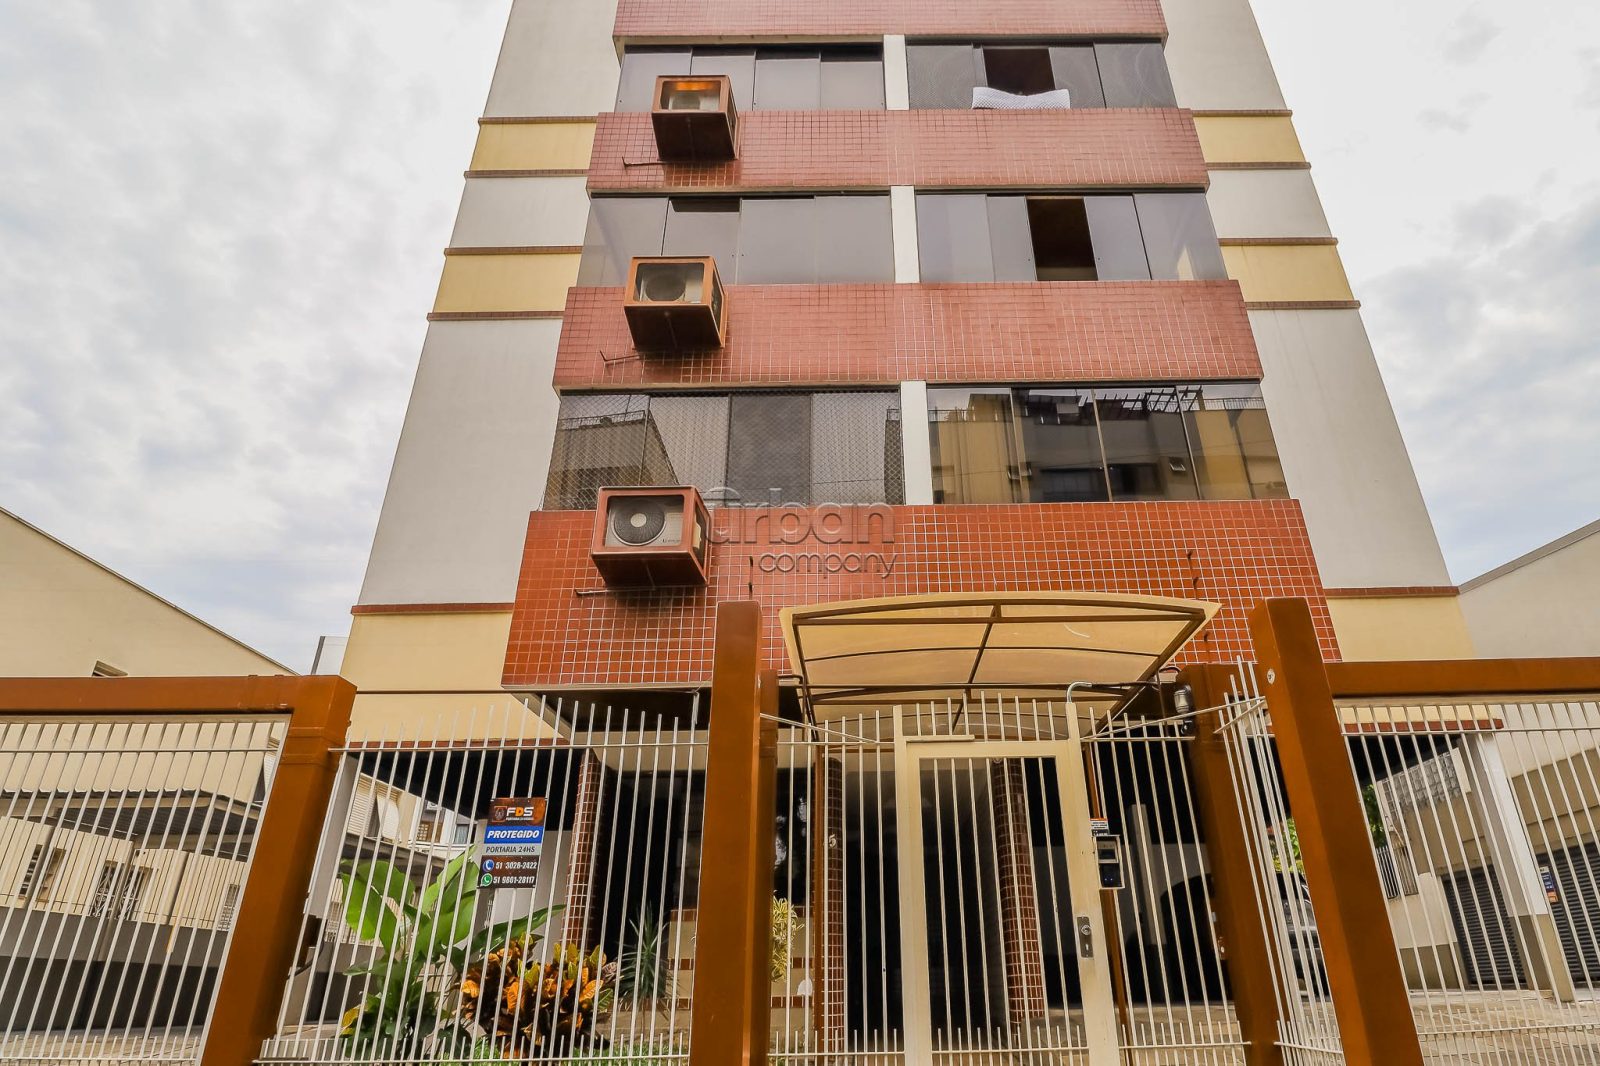 Apartamento com 92m², 3 quartos, 1 suíte, 2 vagas, no bairro Boa Vista em Porto Alegre